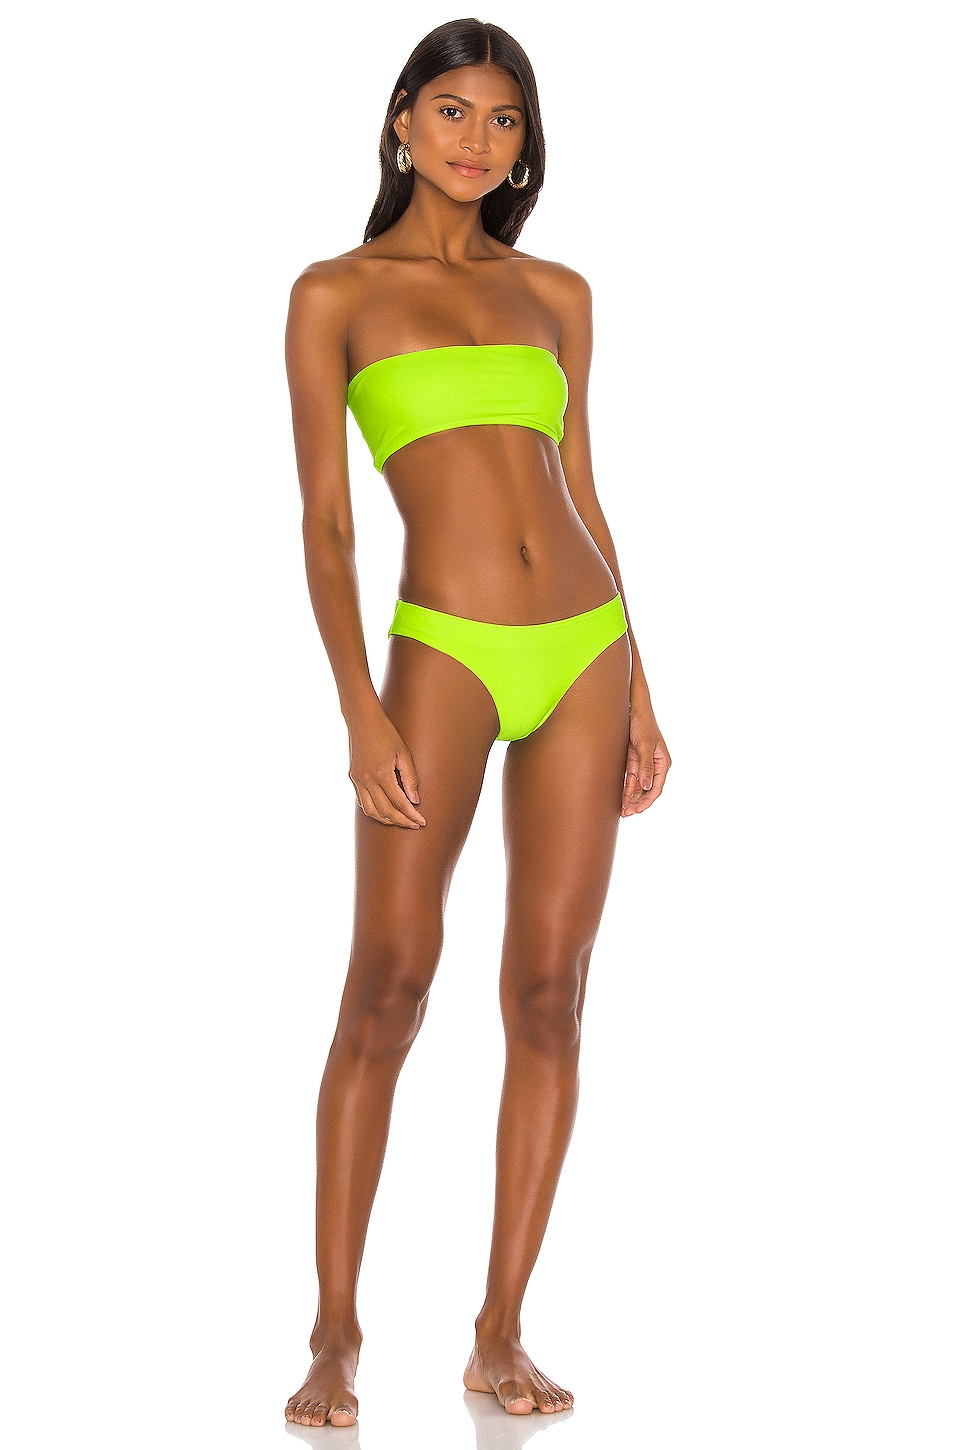 Superdown Bella Strapless Bikini Top In Neon Green Revolve 35496 Hot Sex Picture